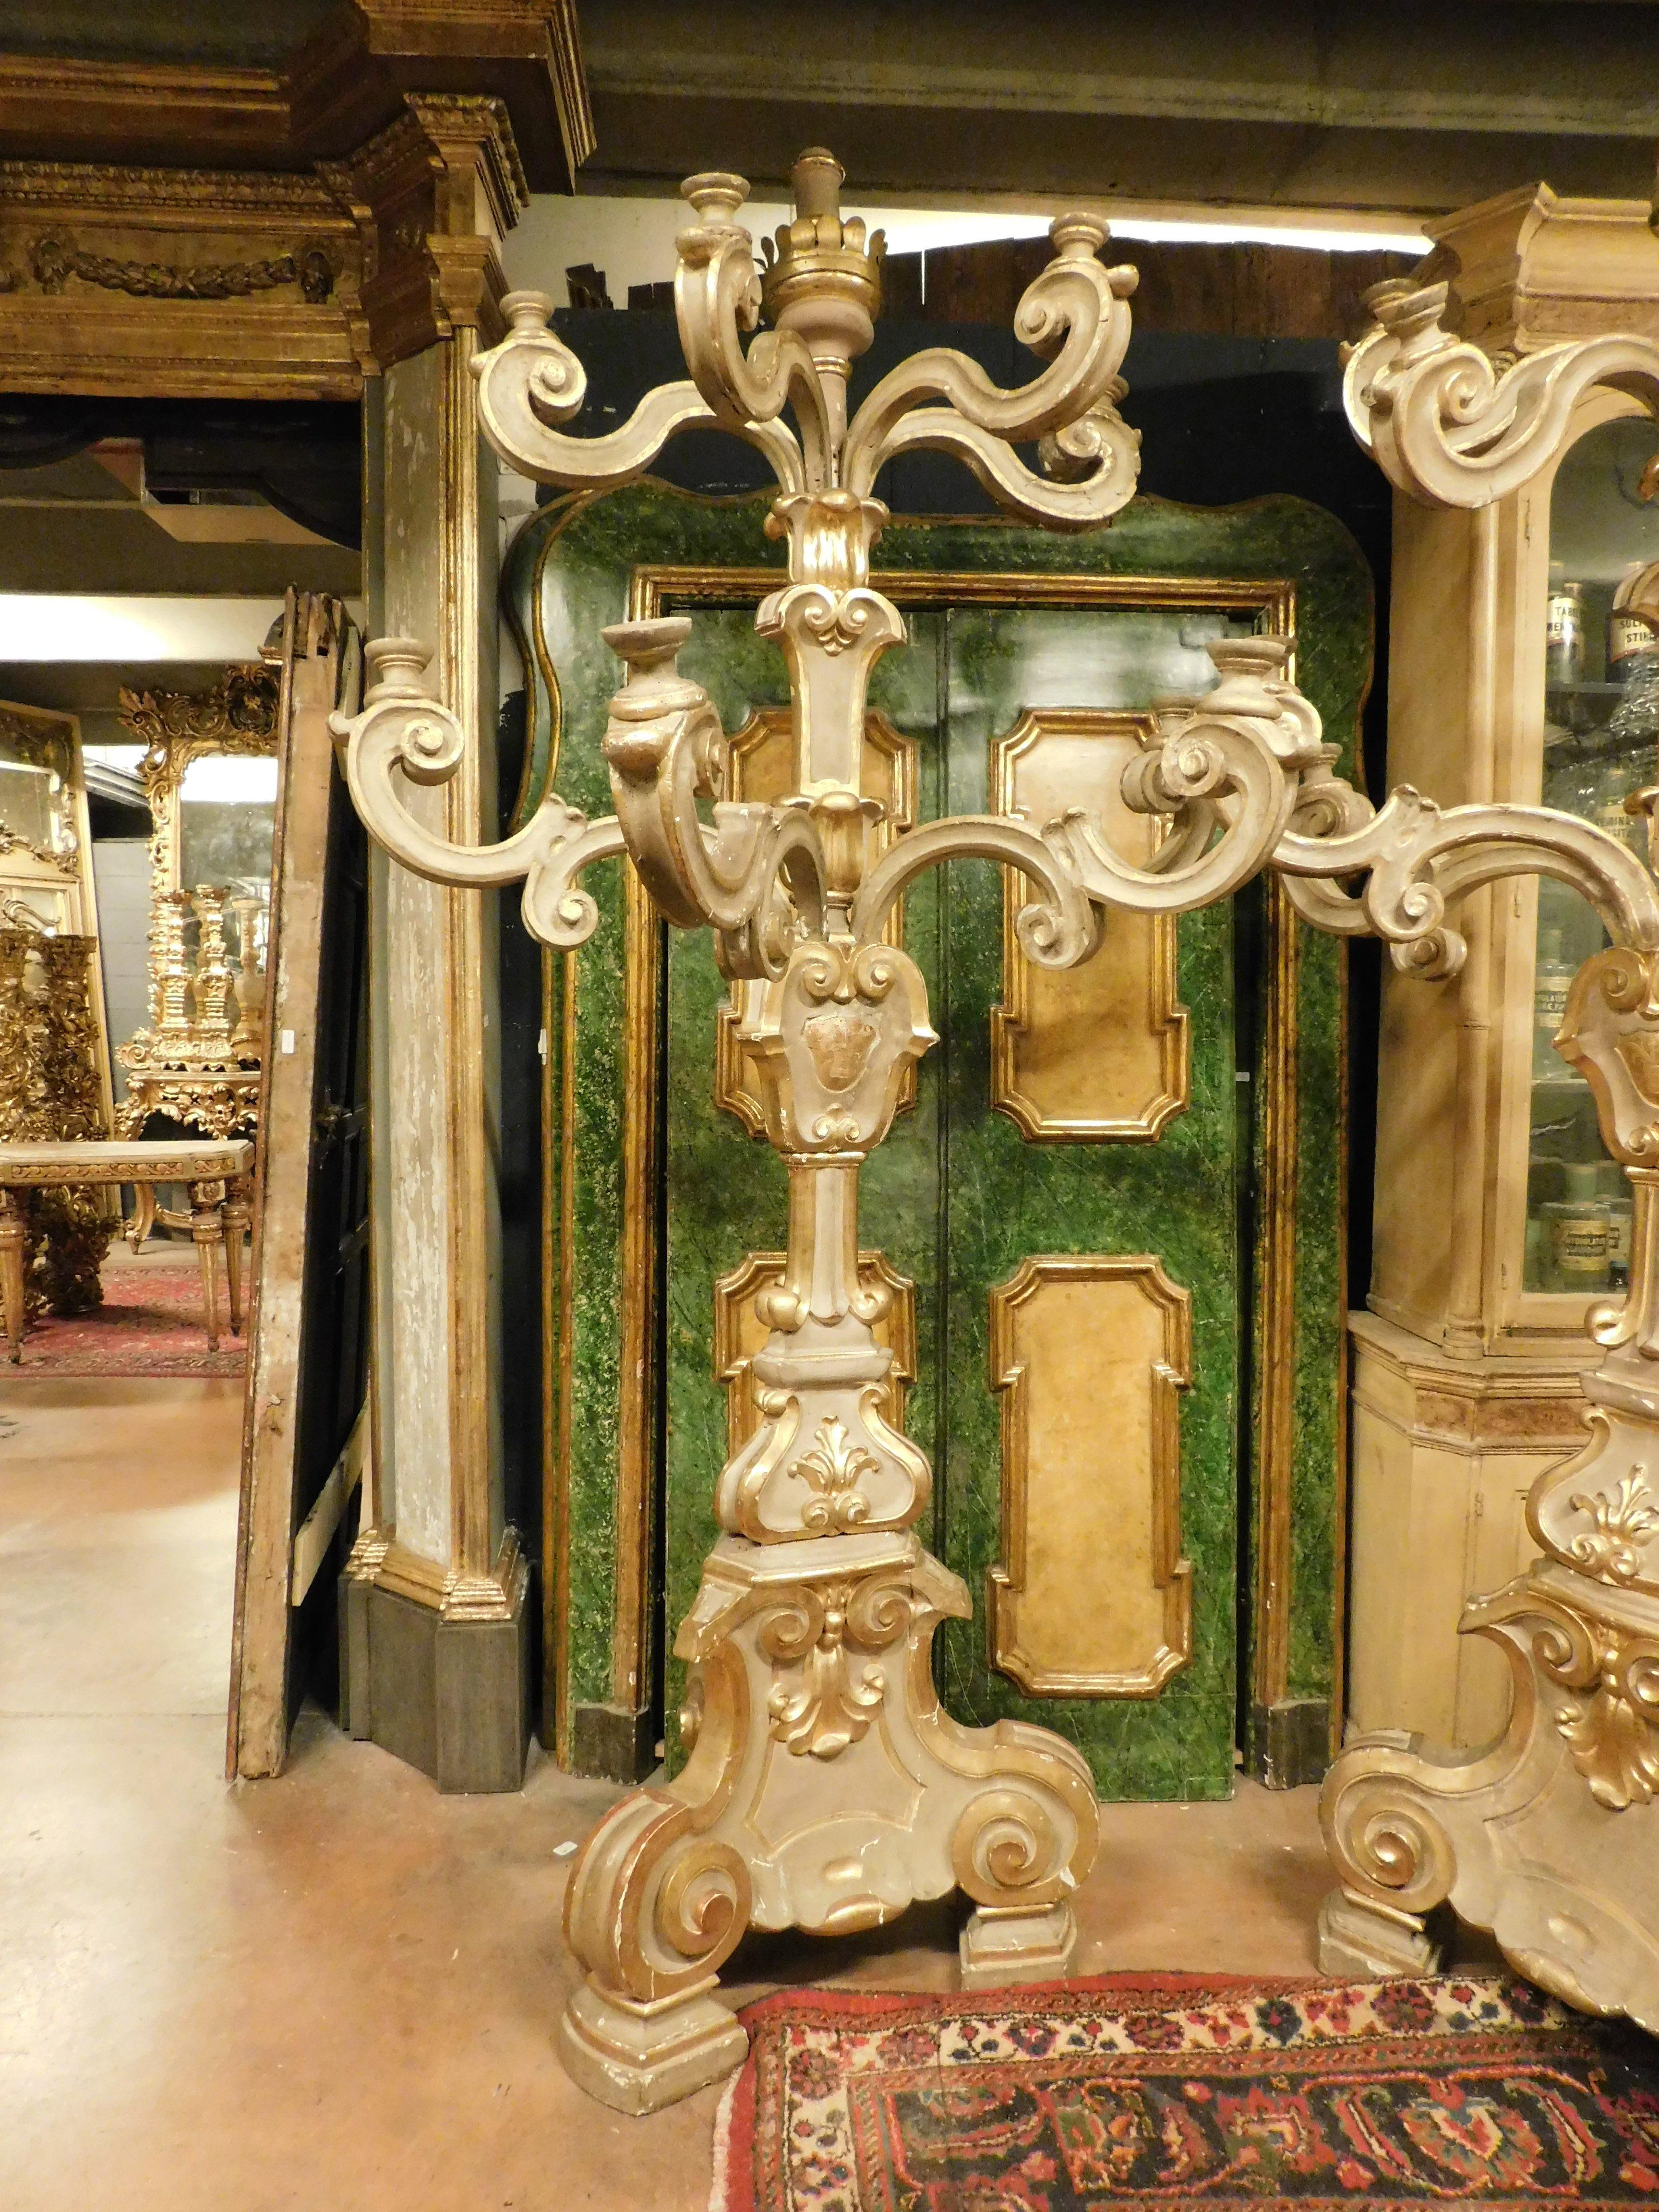 Antikes Paar sehr großer und bedeutender Kerzenständer, hohe Lampenhalter aus vergoldetem und reich geschnitztem Holz, insgesamt 8 Arme, bewegt und mit einem Kerzenhalter am Ende, aus einer Kirche des 18. Jahrhunderts in Florenz (Italien).
Nicht